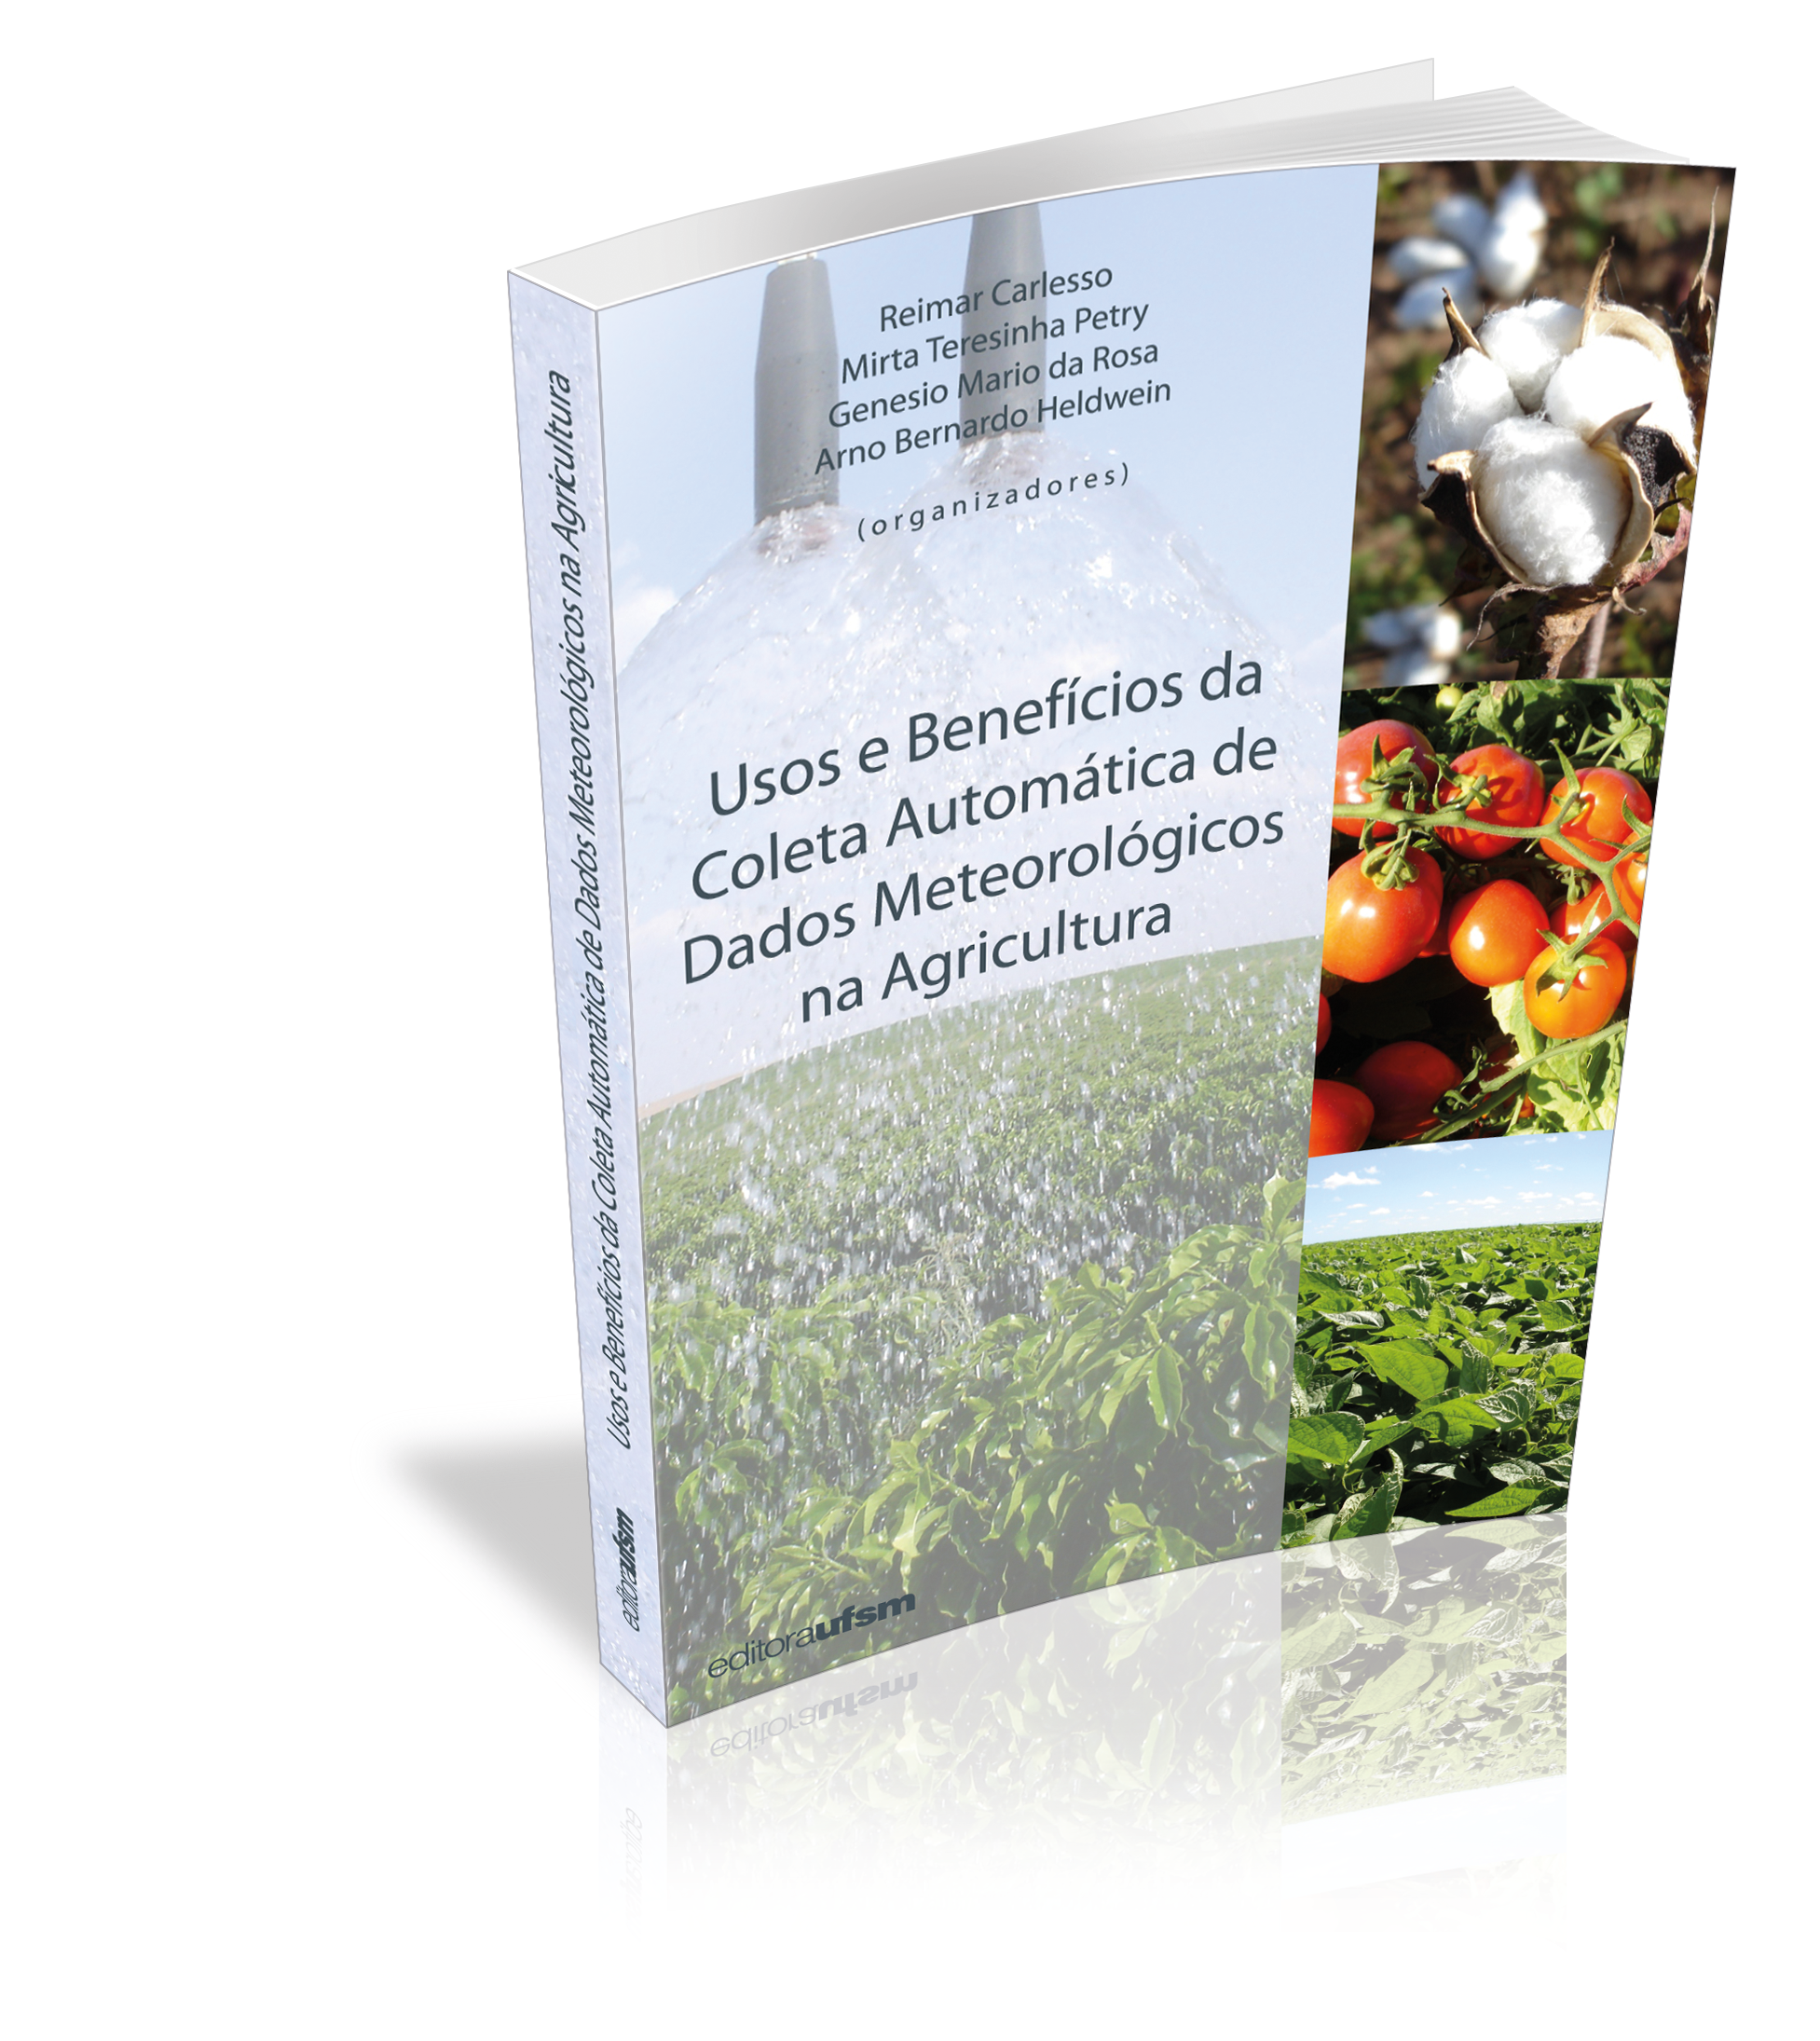 Capa do livro Usos e Benefícios da Coleta Automática de Dados Meteorológicos na Agricultura